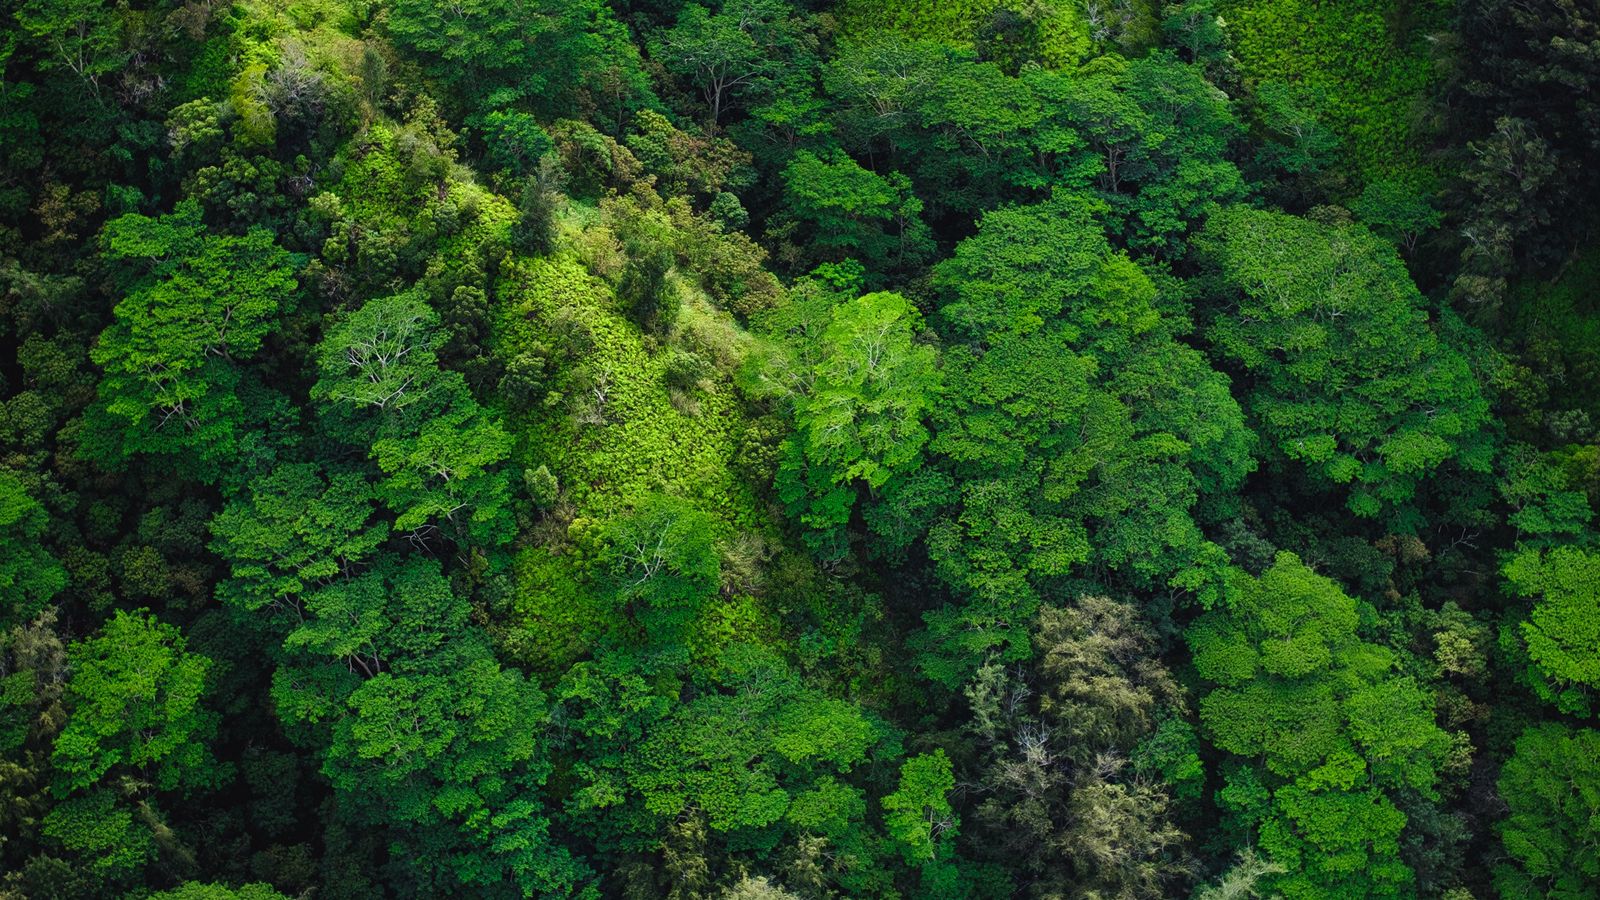 Tải ngay hình nền 1600x900 với cây và rừng phủ xanh lá cây. Với vị trí từ trên xuống và màu sắc đầy sức sống, hình nền sẽ mang đến cho bạn cảm giác thật thư giãn và yên bình. Hãy tận hưởng những khoảnh khắc bình yên với hình nền này.